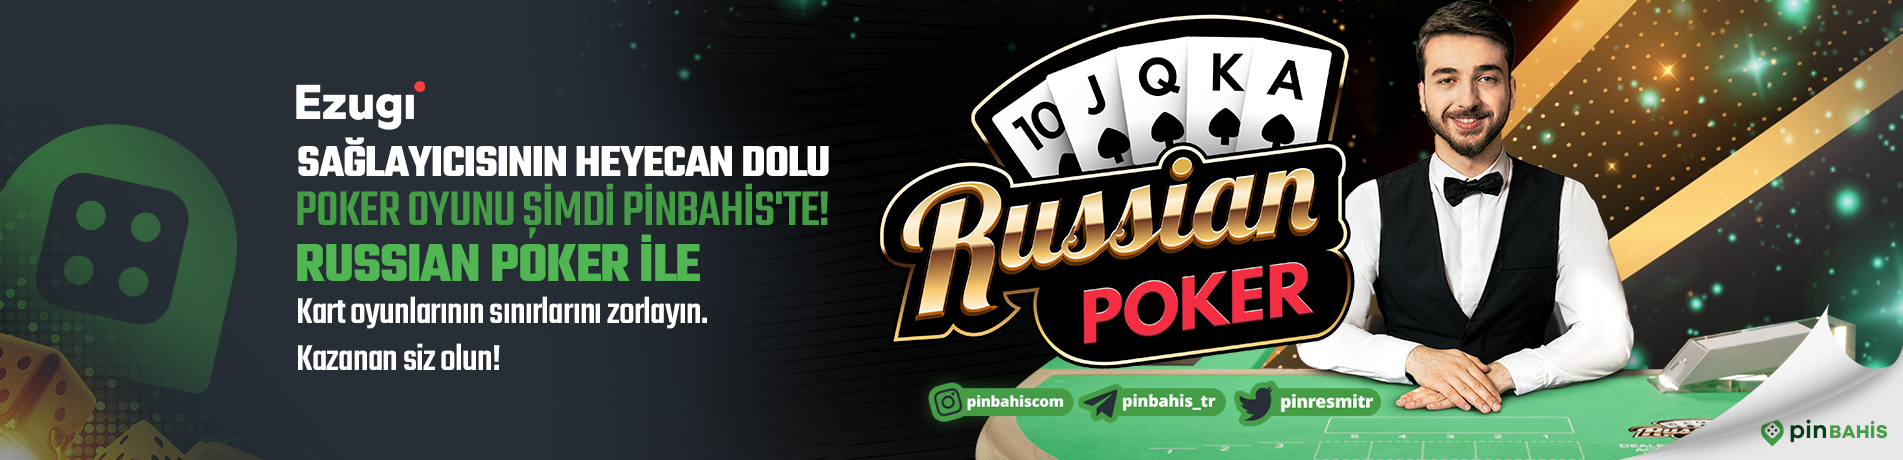 russian poker